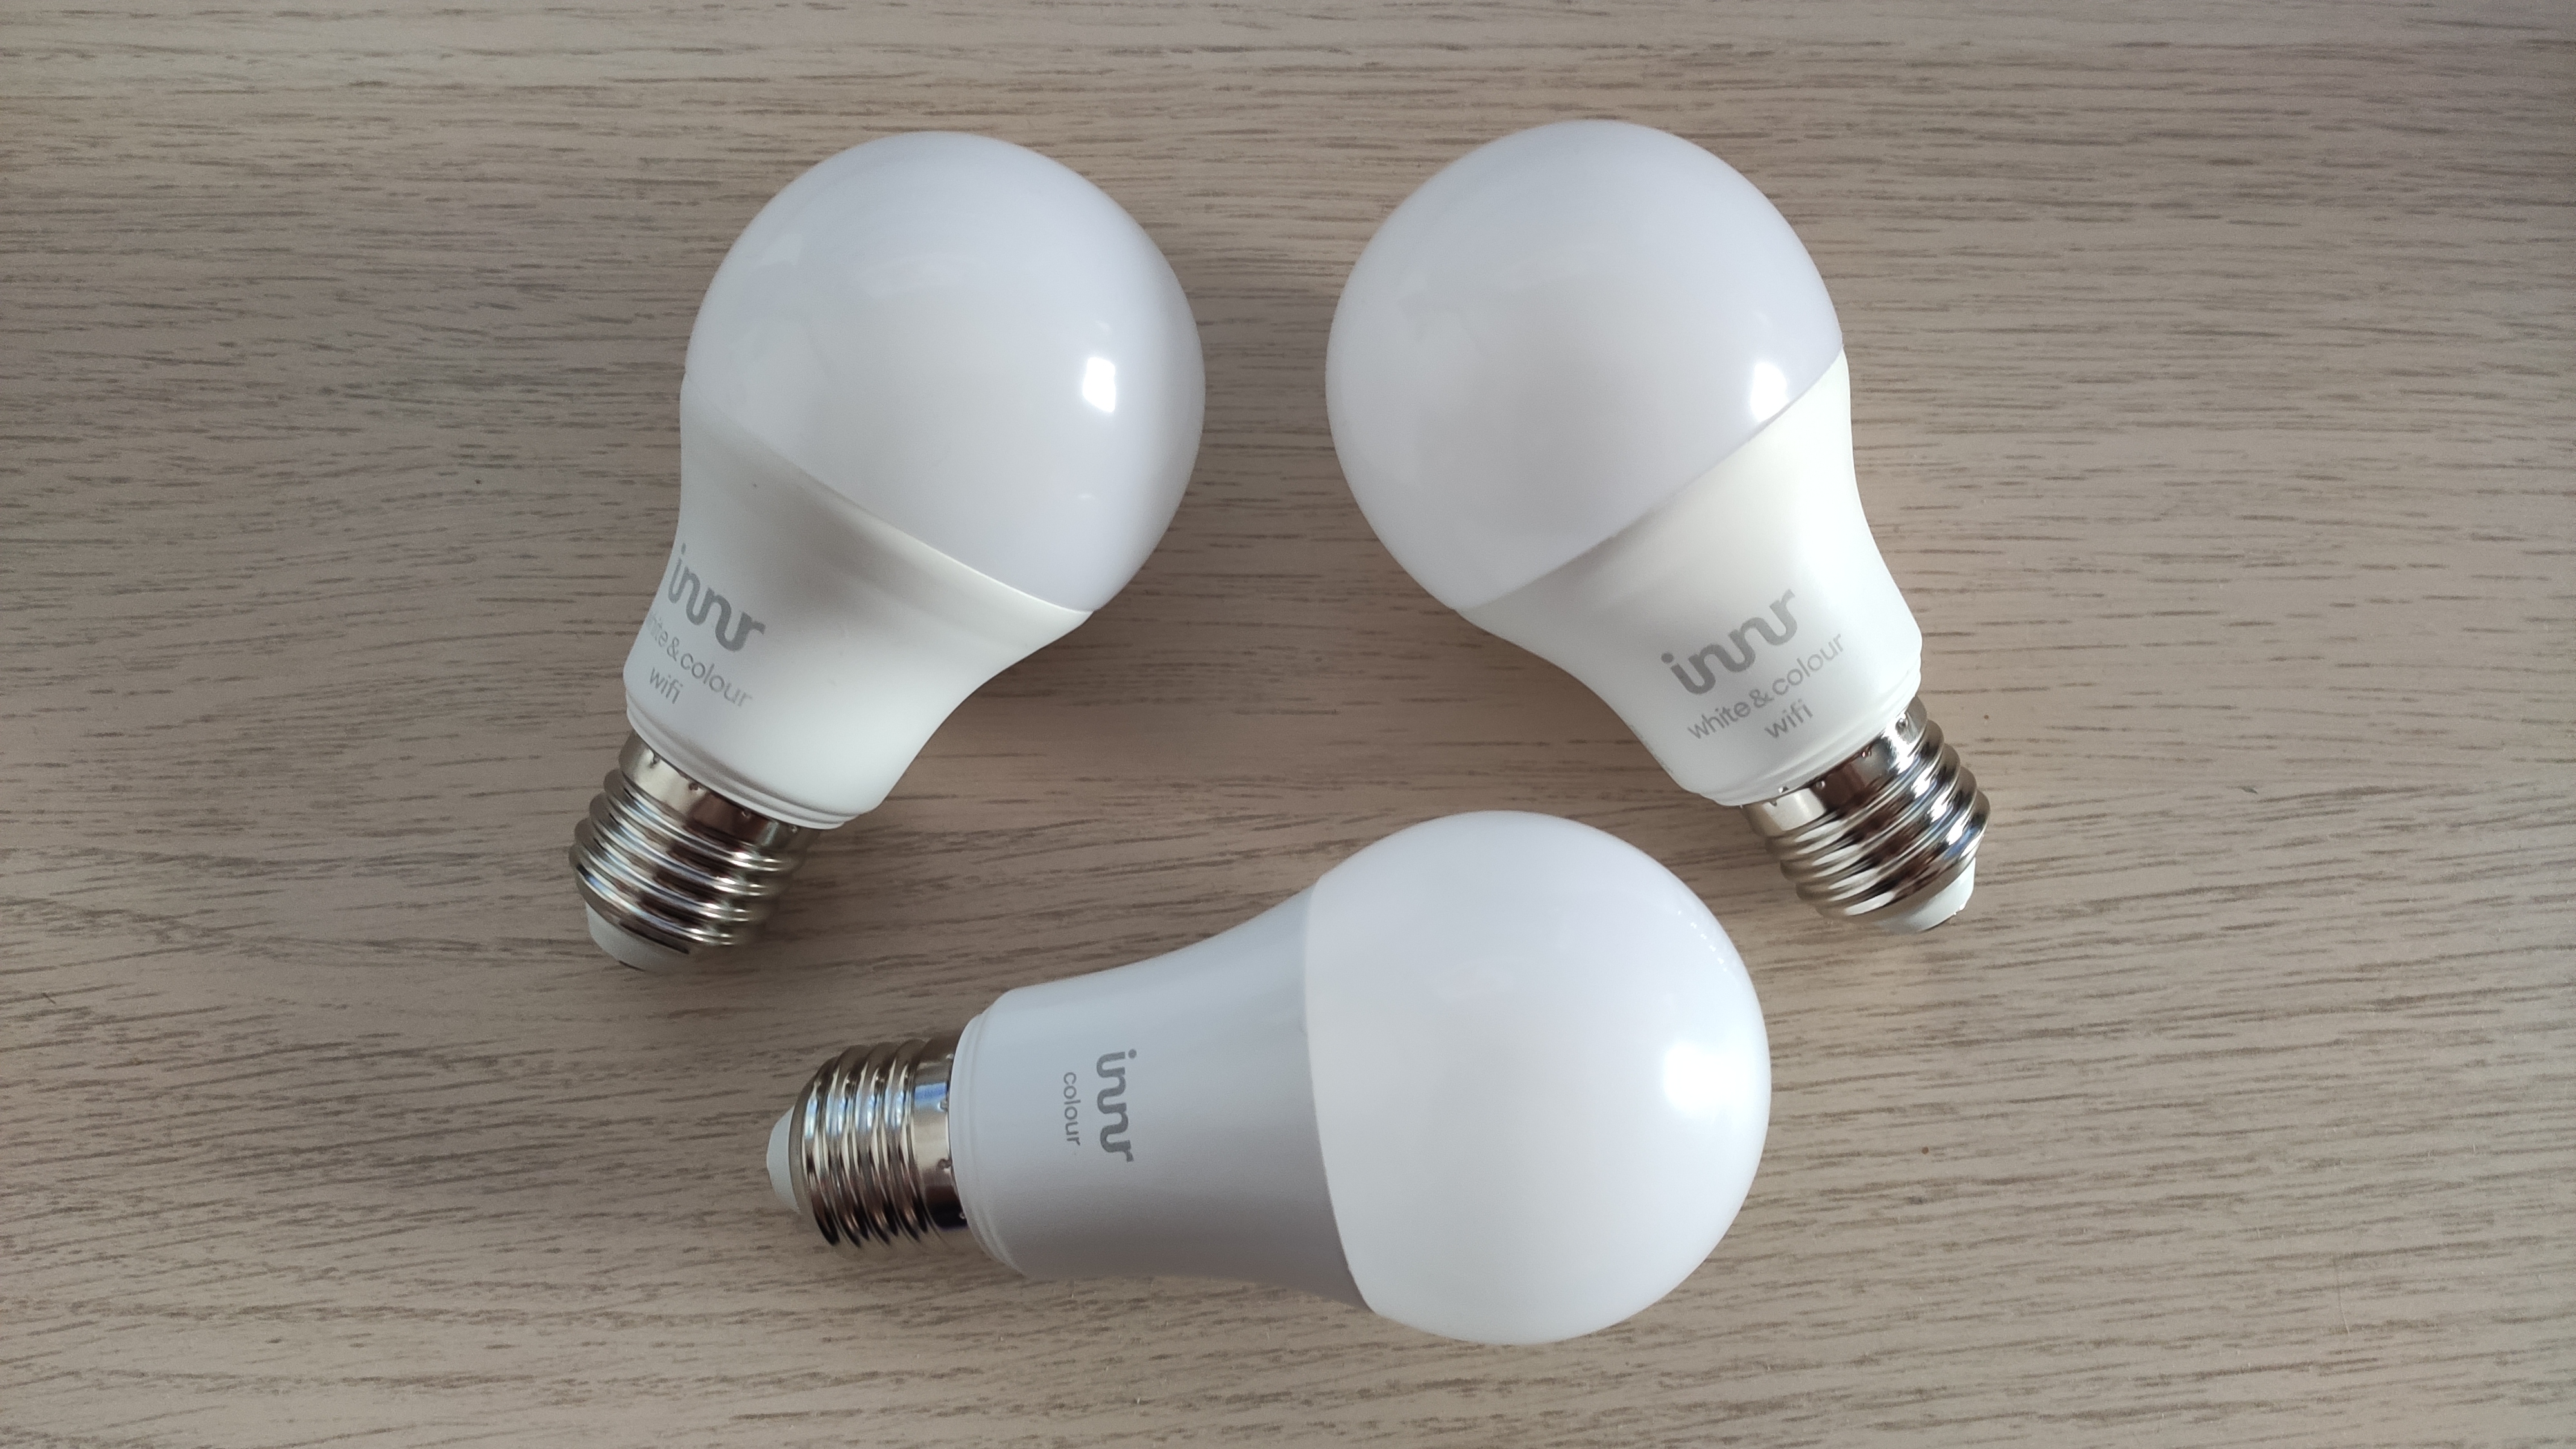 Domotique: essai du RUBAN LED connecté LIDL et Tutoriel Smartlife 